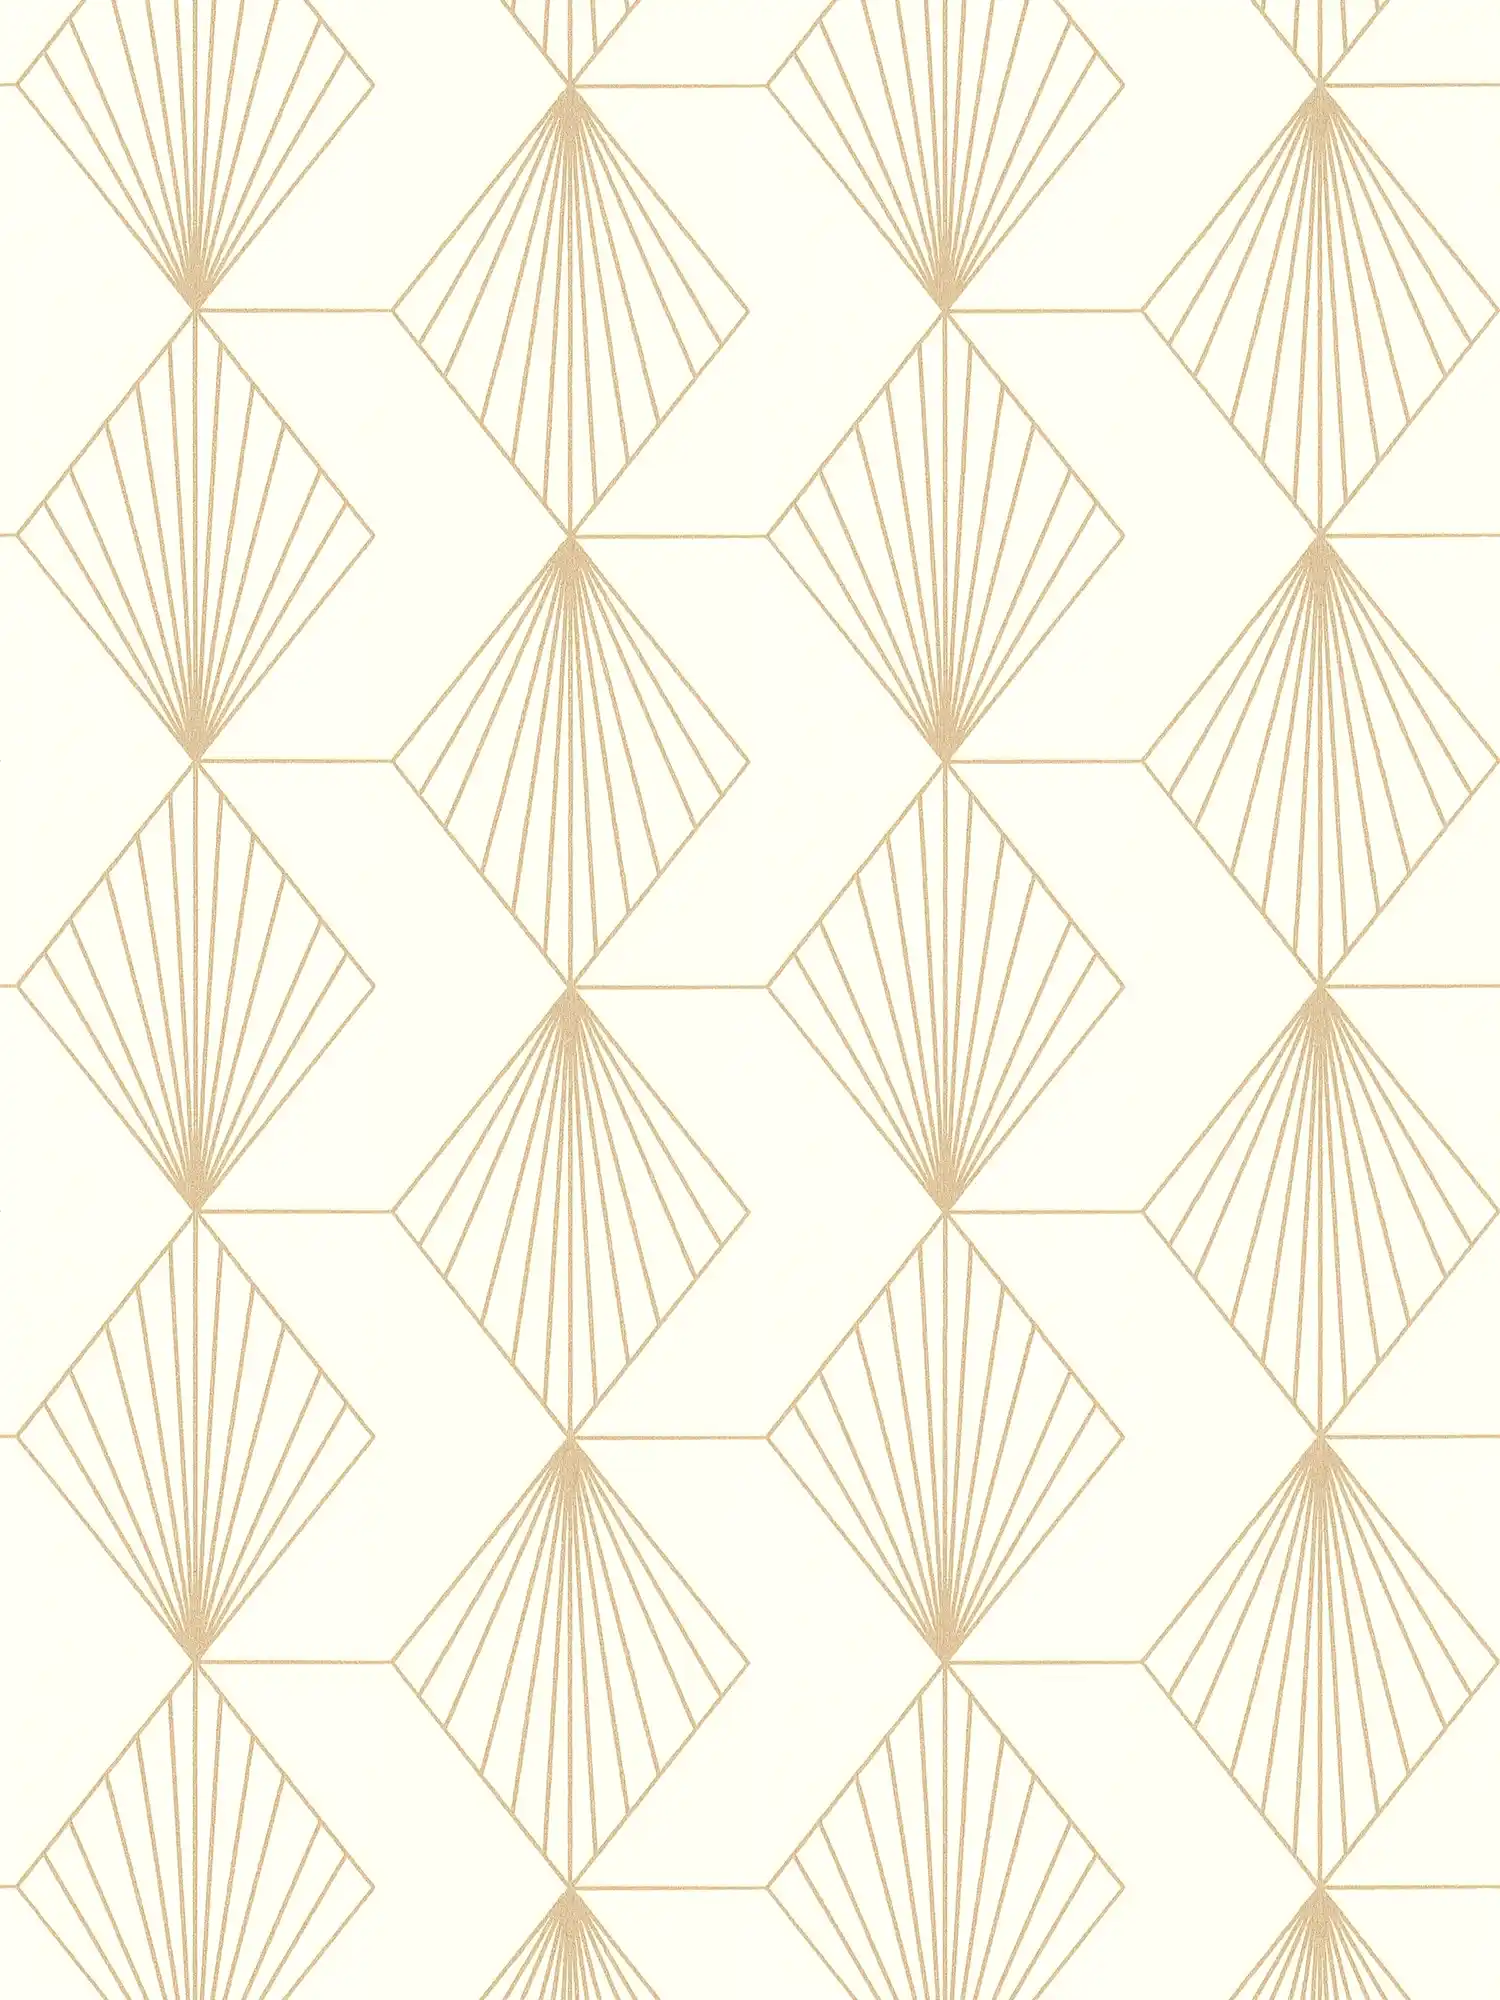         Papel pintado gráfico de tejido-no-tejido con un glamuroso diseño Art Déco - blanco, dorado
    